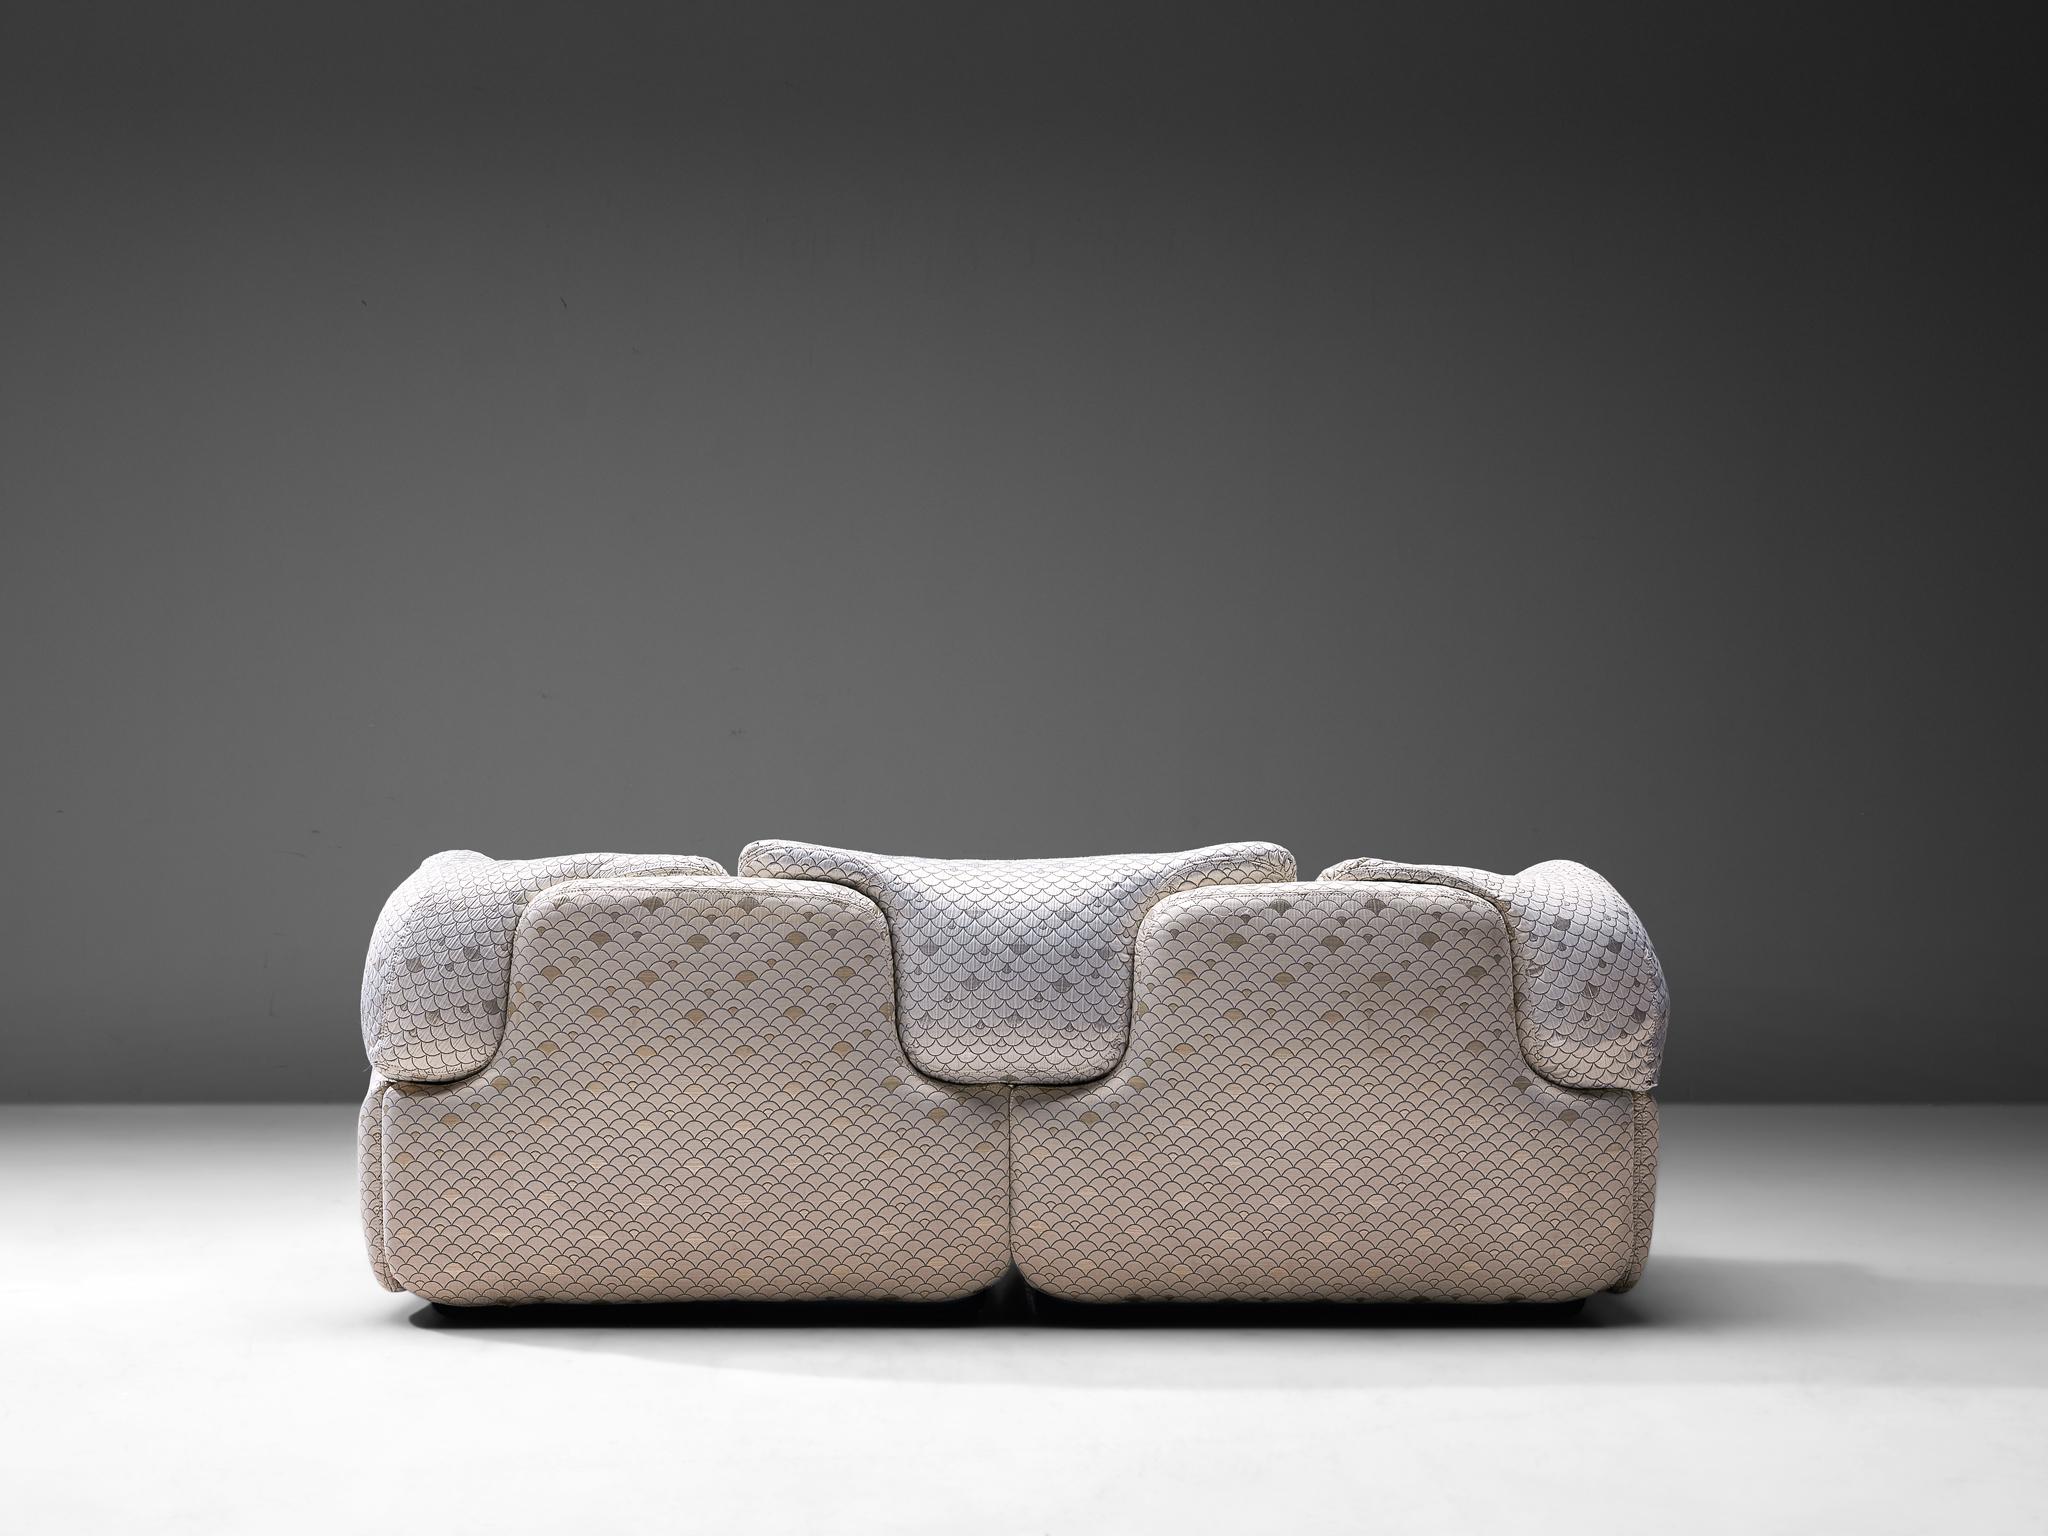 Fabric Alberto Rosselli for Saporiti 'Confidential' Sofa